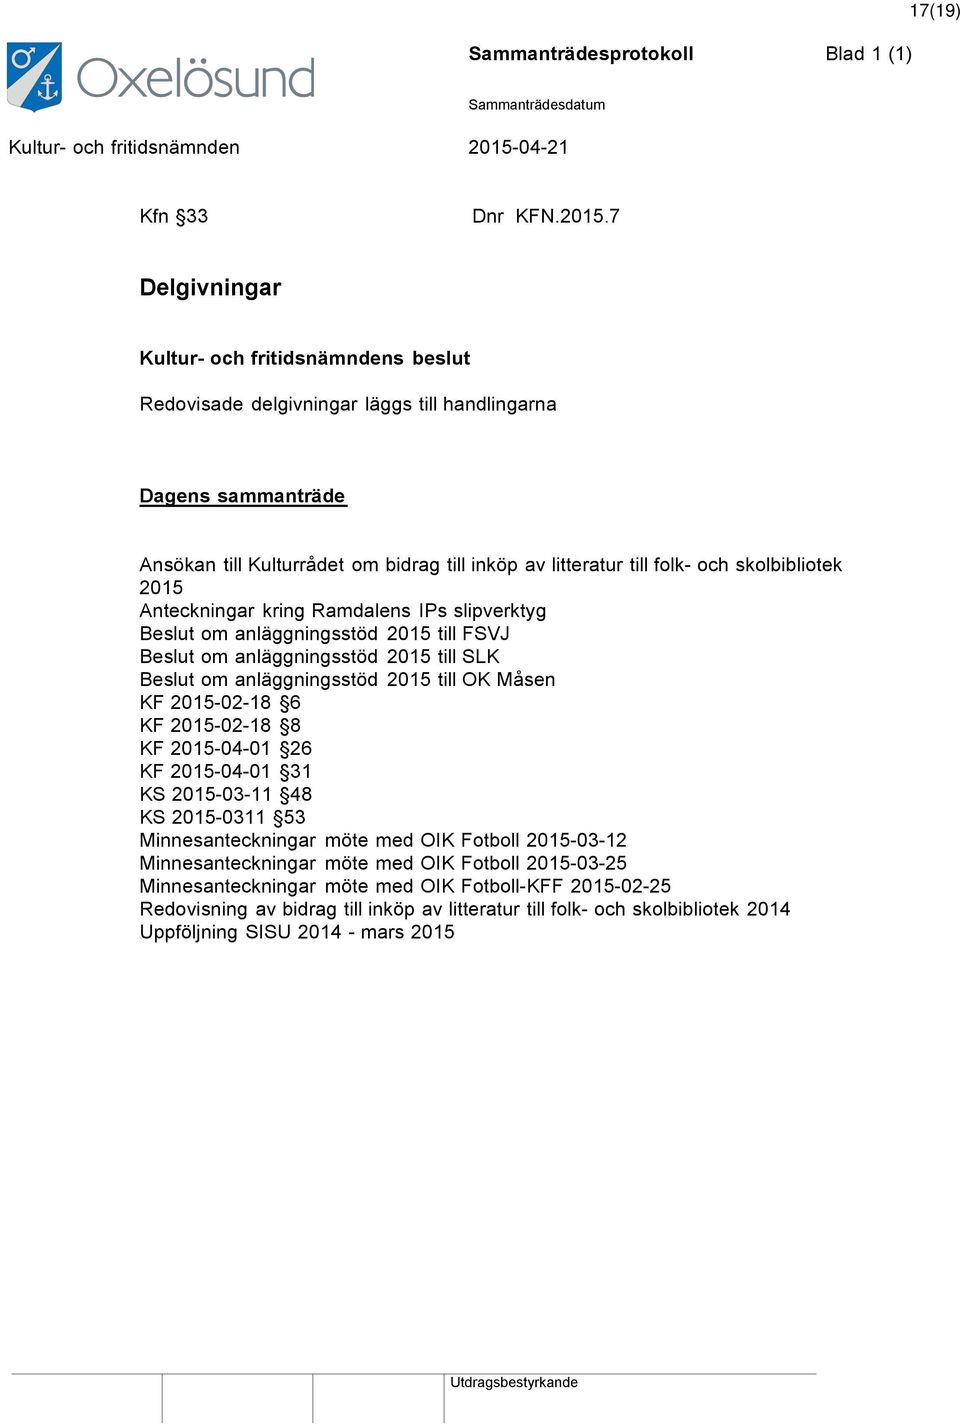 skolbibliotek 2015 Anteckningar kring Ramdalens IPs slipverktyg Beslut om anläggningsstöd 2015 till FSVJ Beslut om anläggningsstöd 2015 till SLK Beslut om anläggningsstöd 2015 till OK Måsen KF